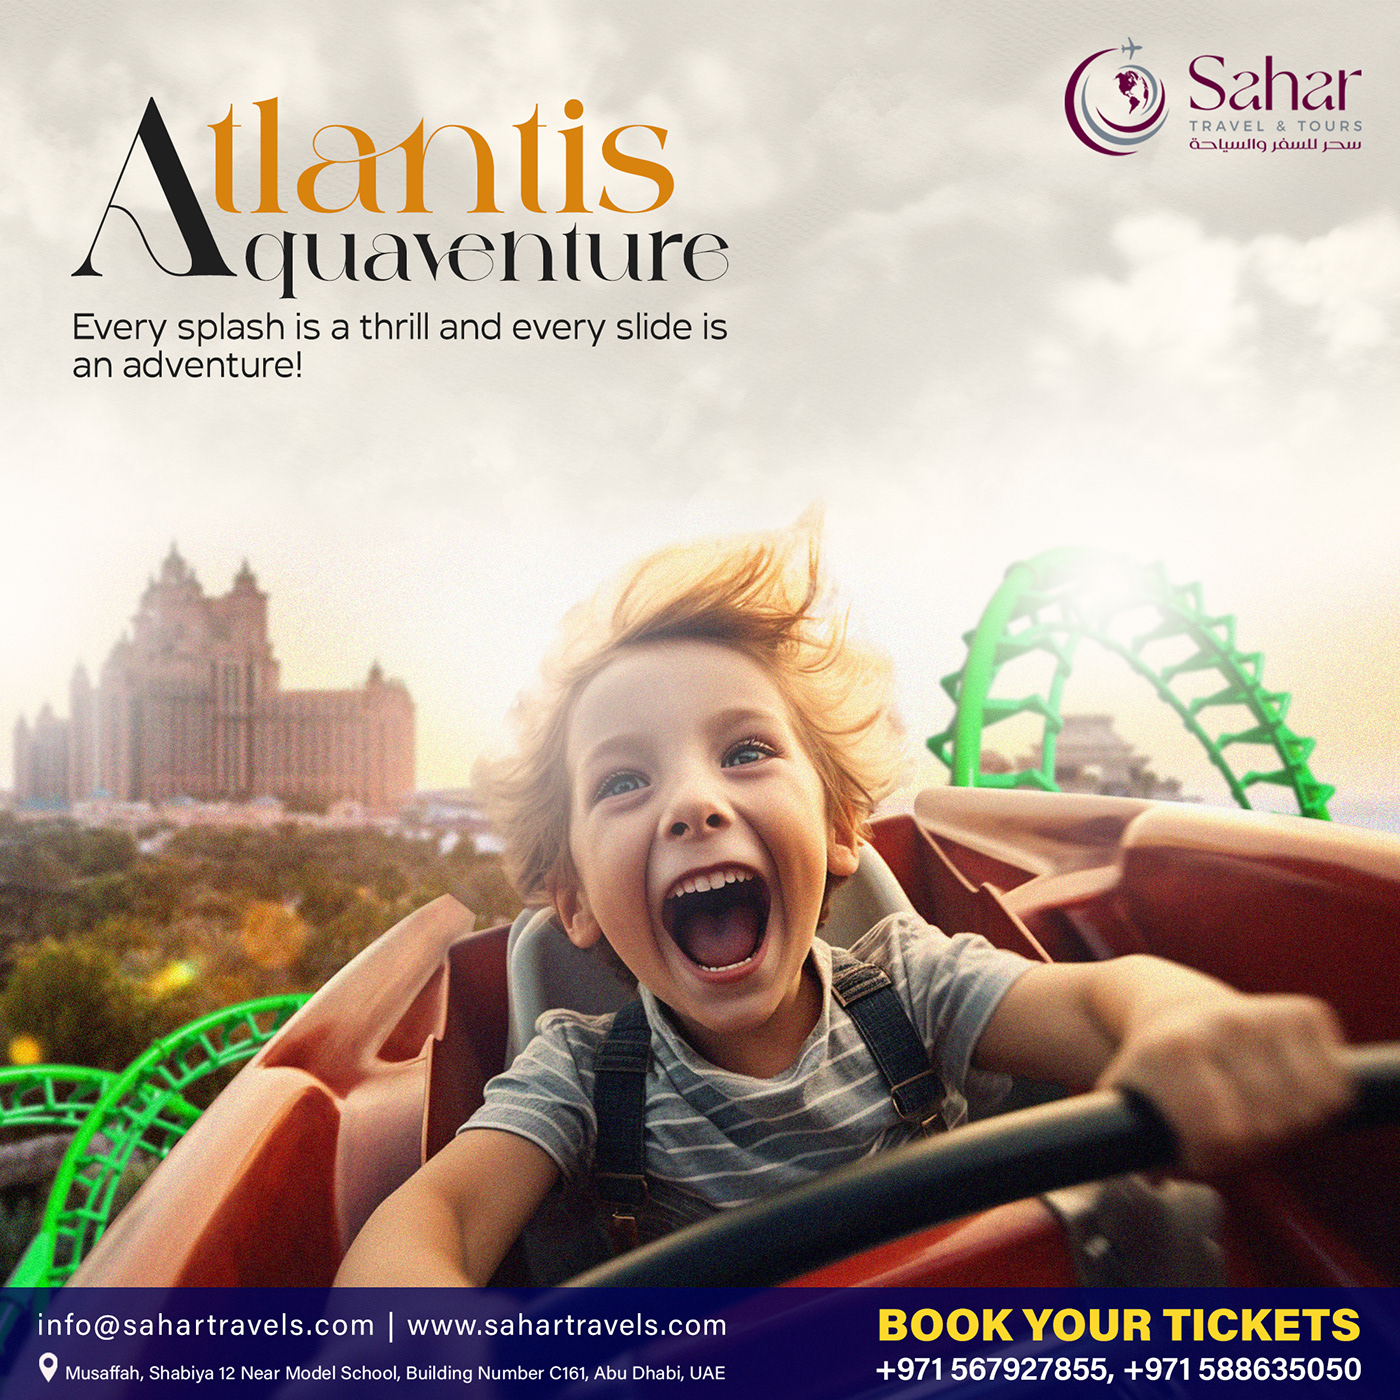 Atlantis Aquaventure Adventure Tour Package
Atlantis Aquaventure Tour Creative Posters, UAE